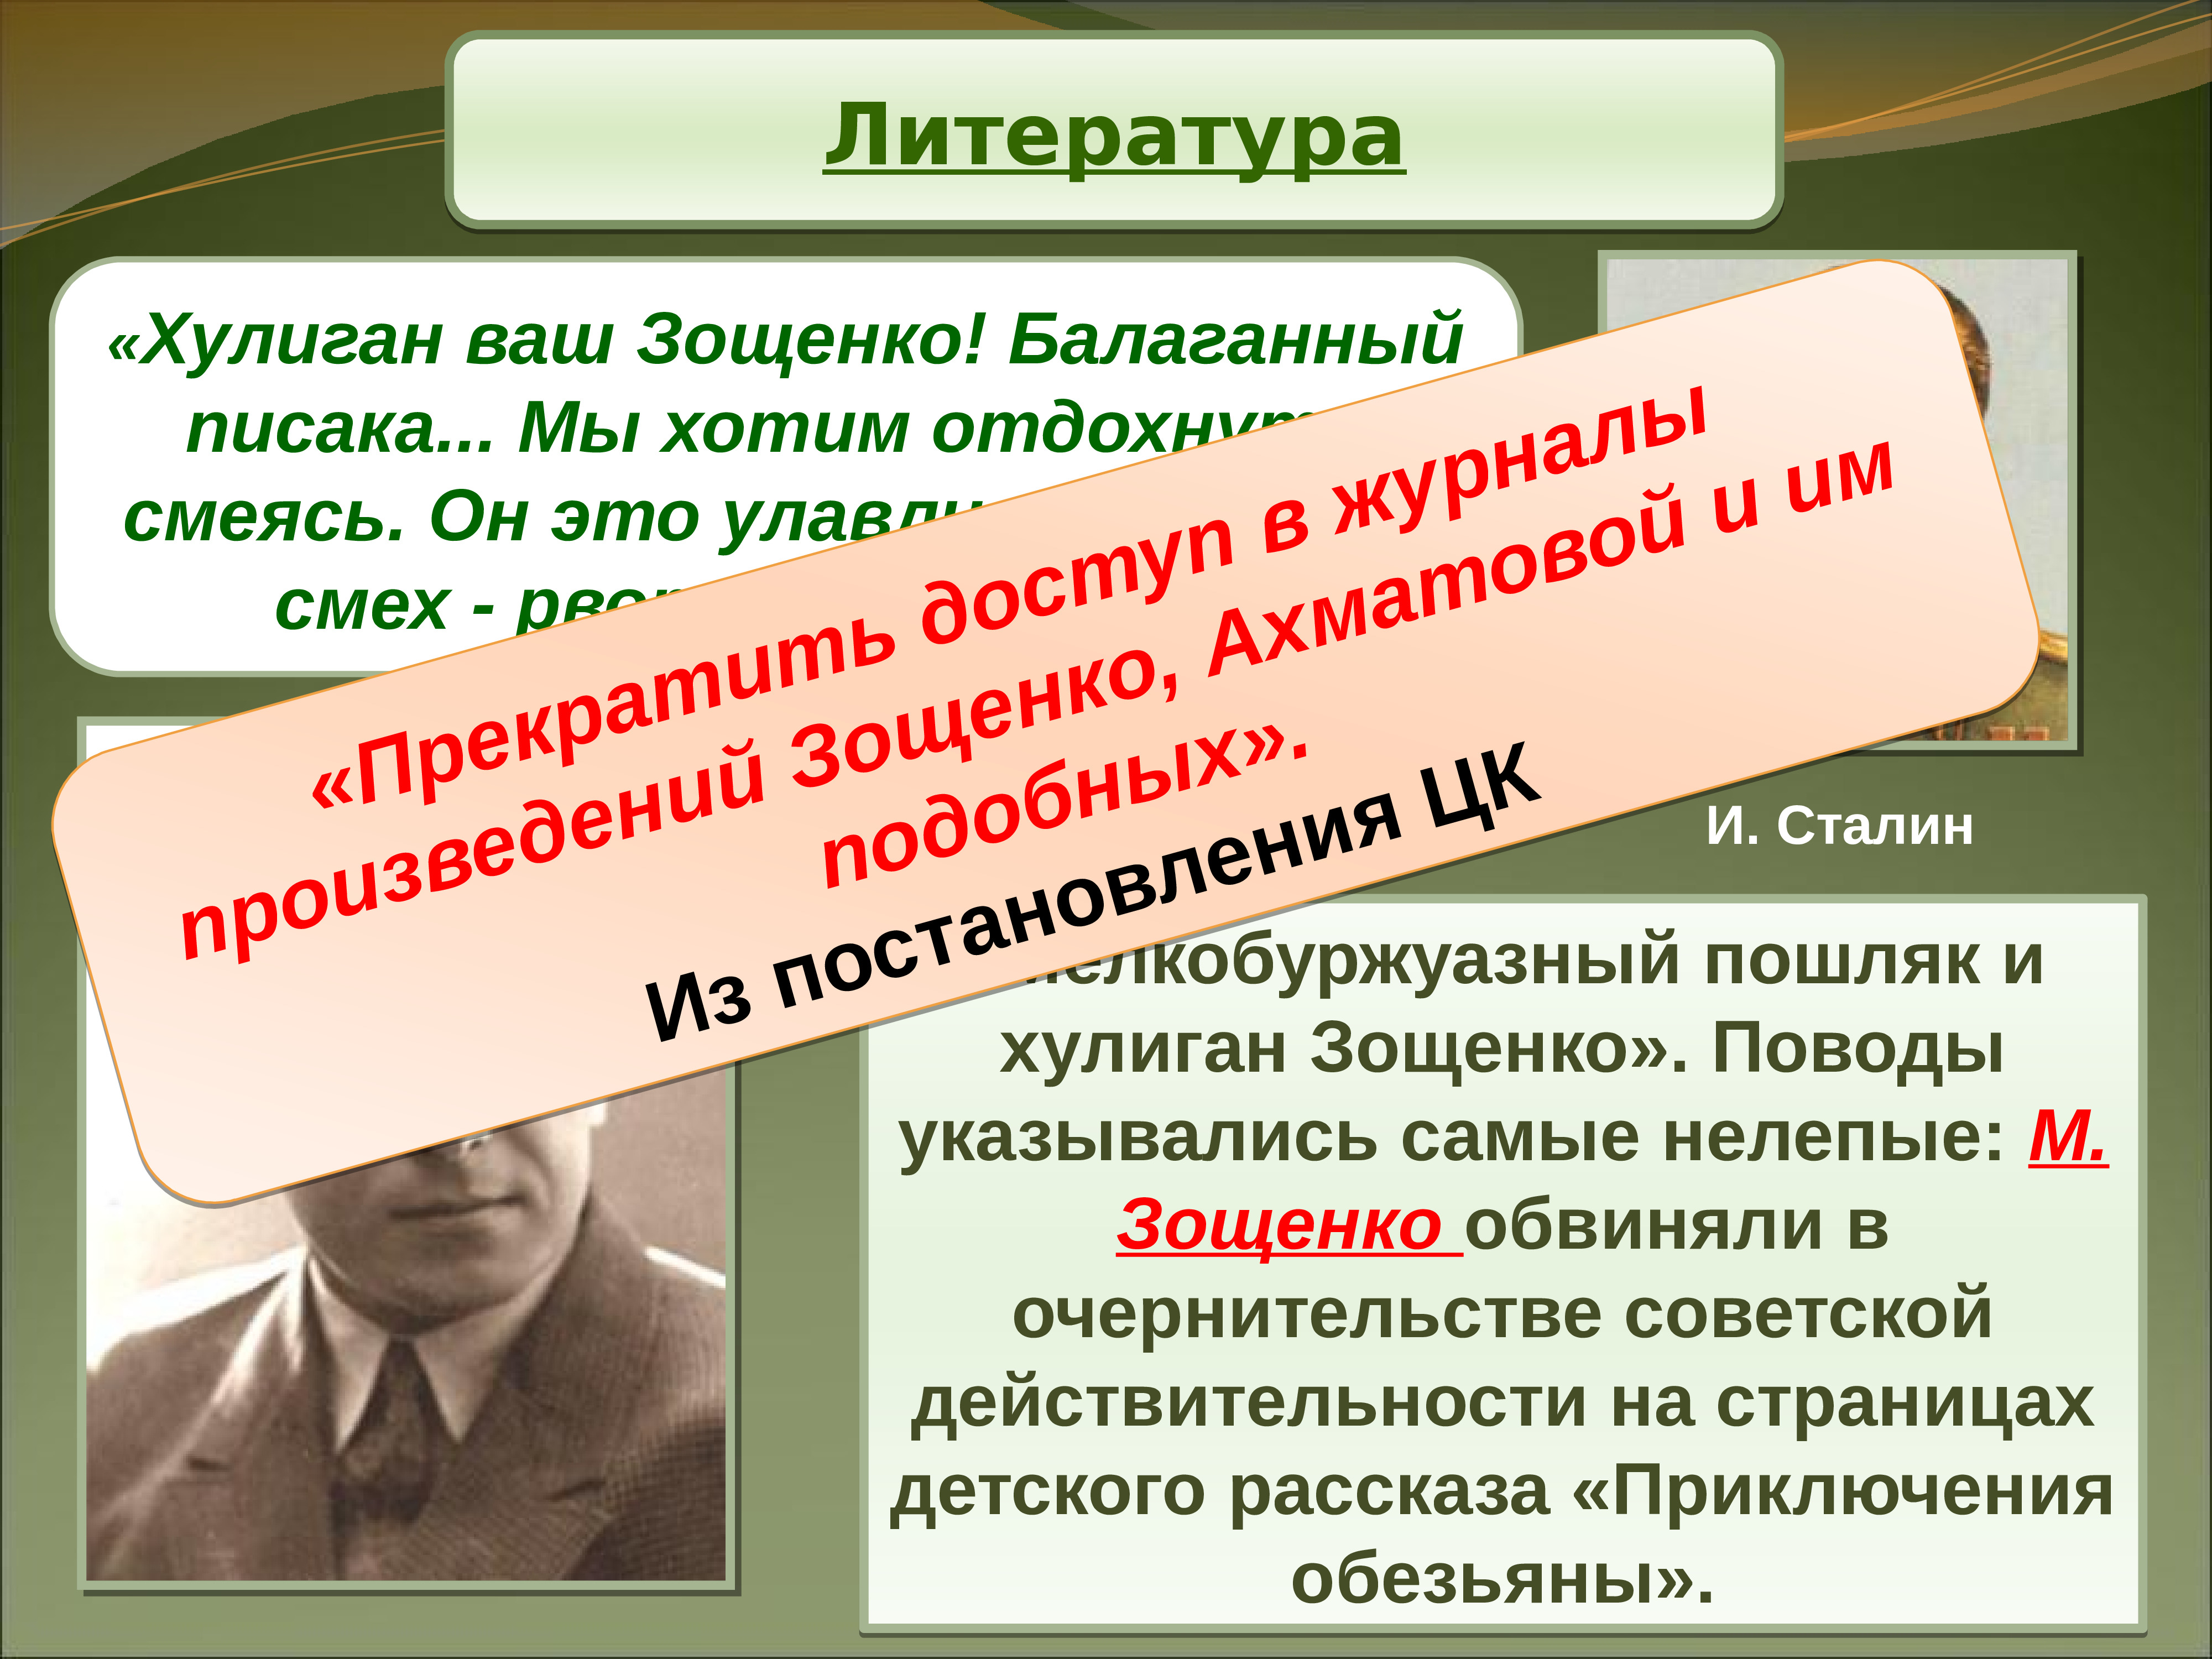 Хулиган ваша. Хулиган в литературе. Литература 1945-1953. Зощенко и Сталин. Мелкобуржуазный.